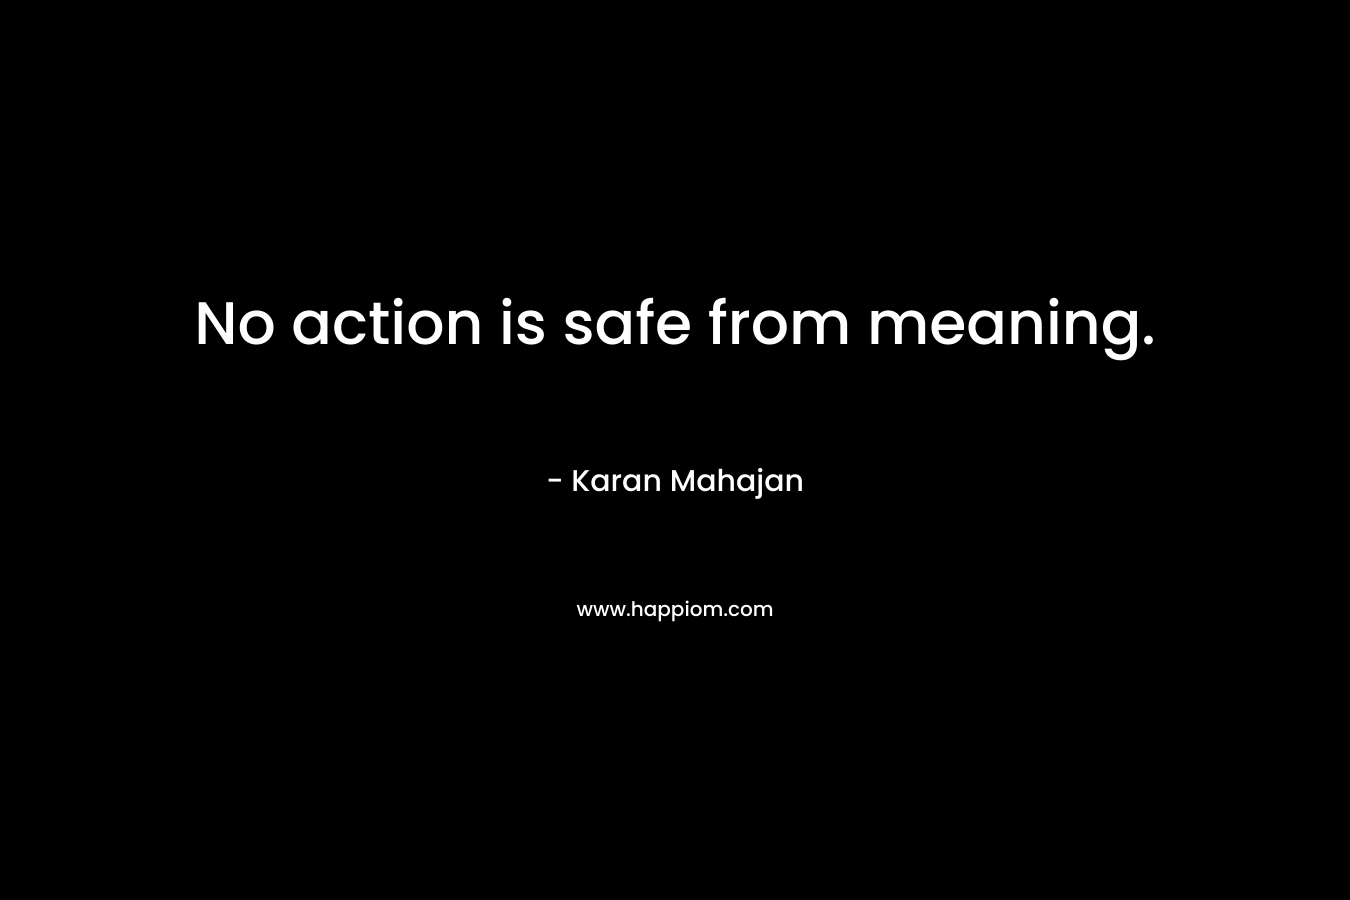 No action is safe from meaning. – Karan Mahajan